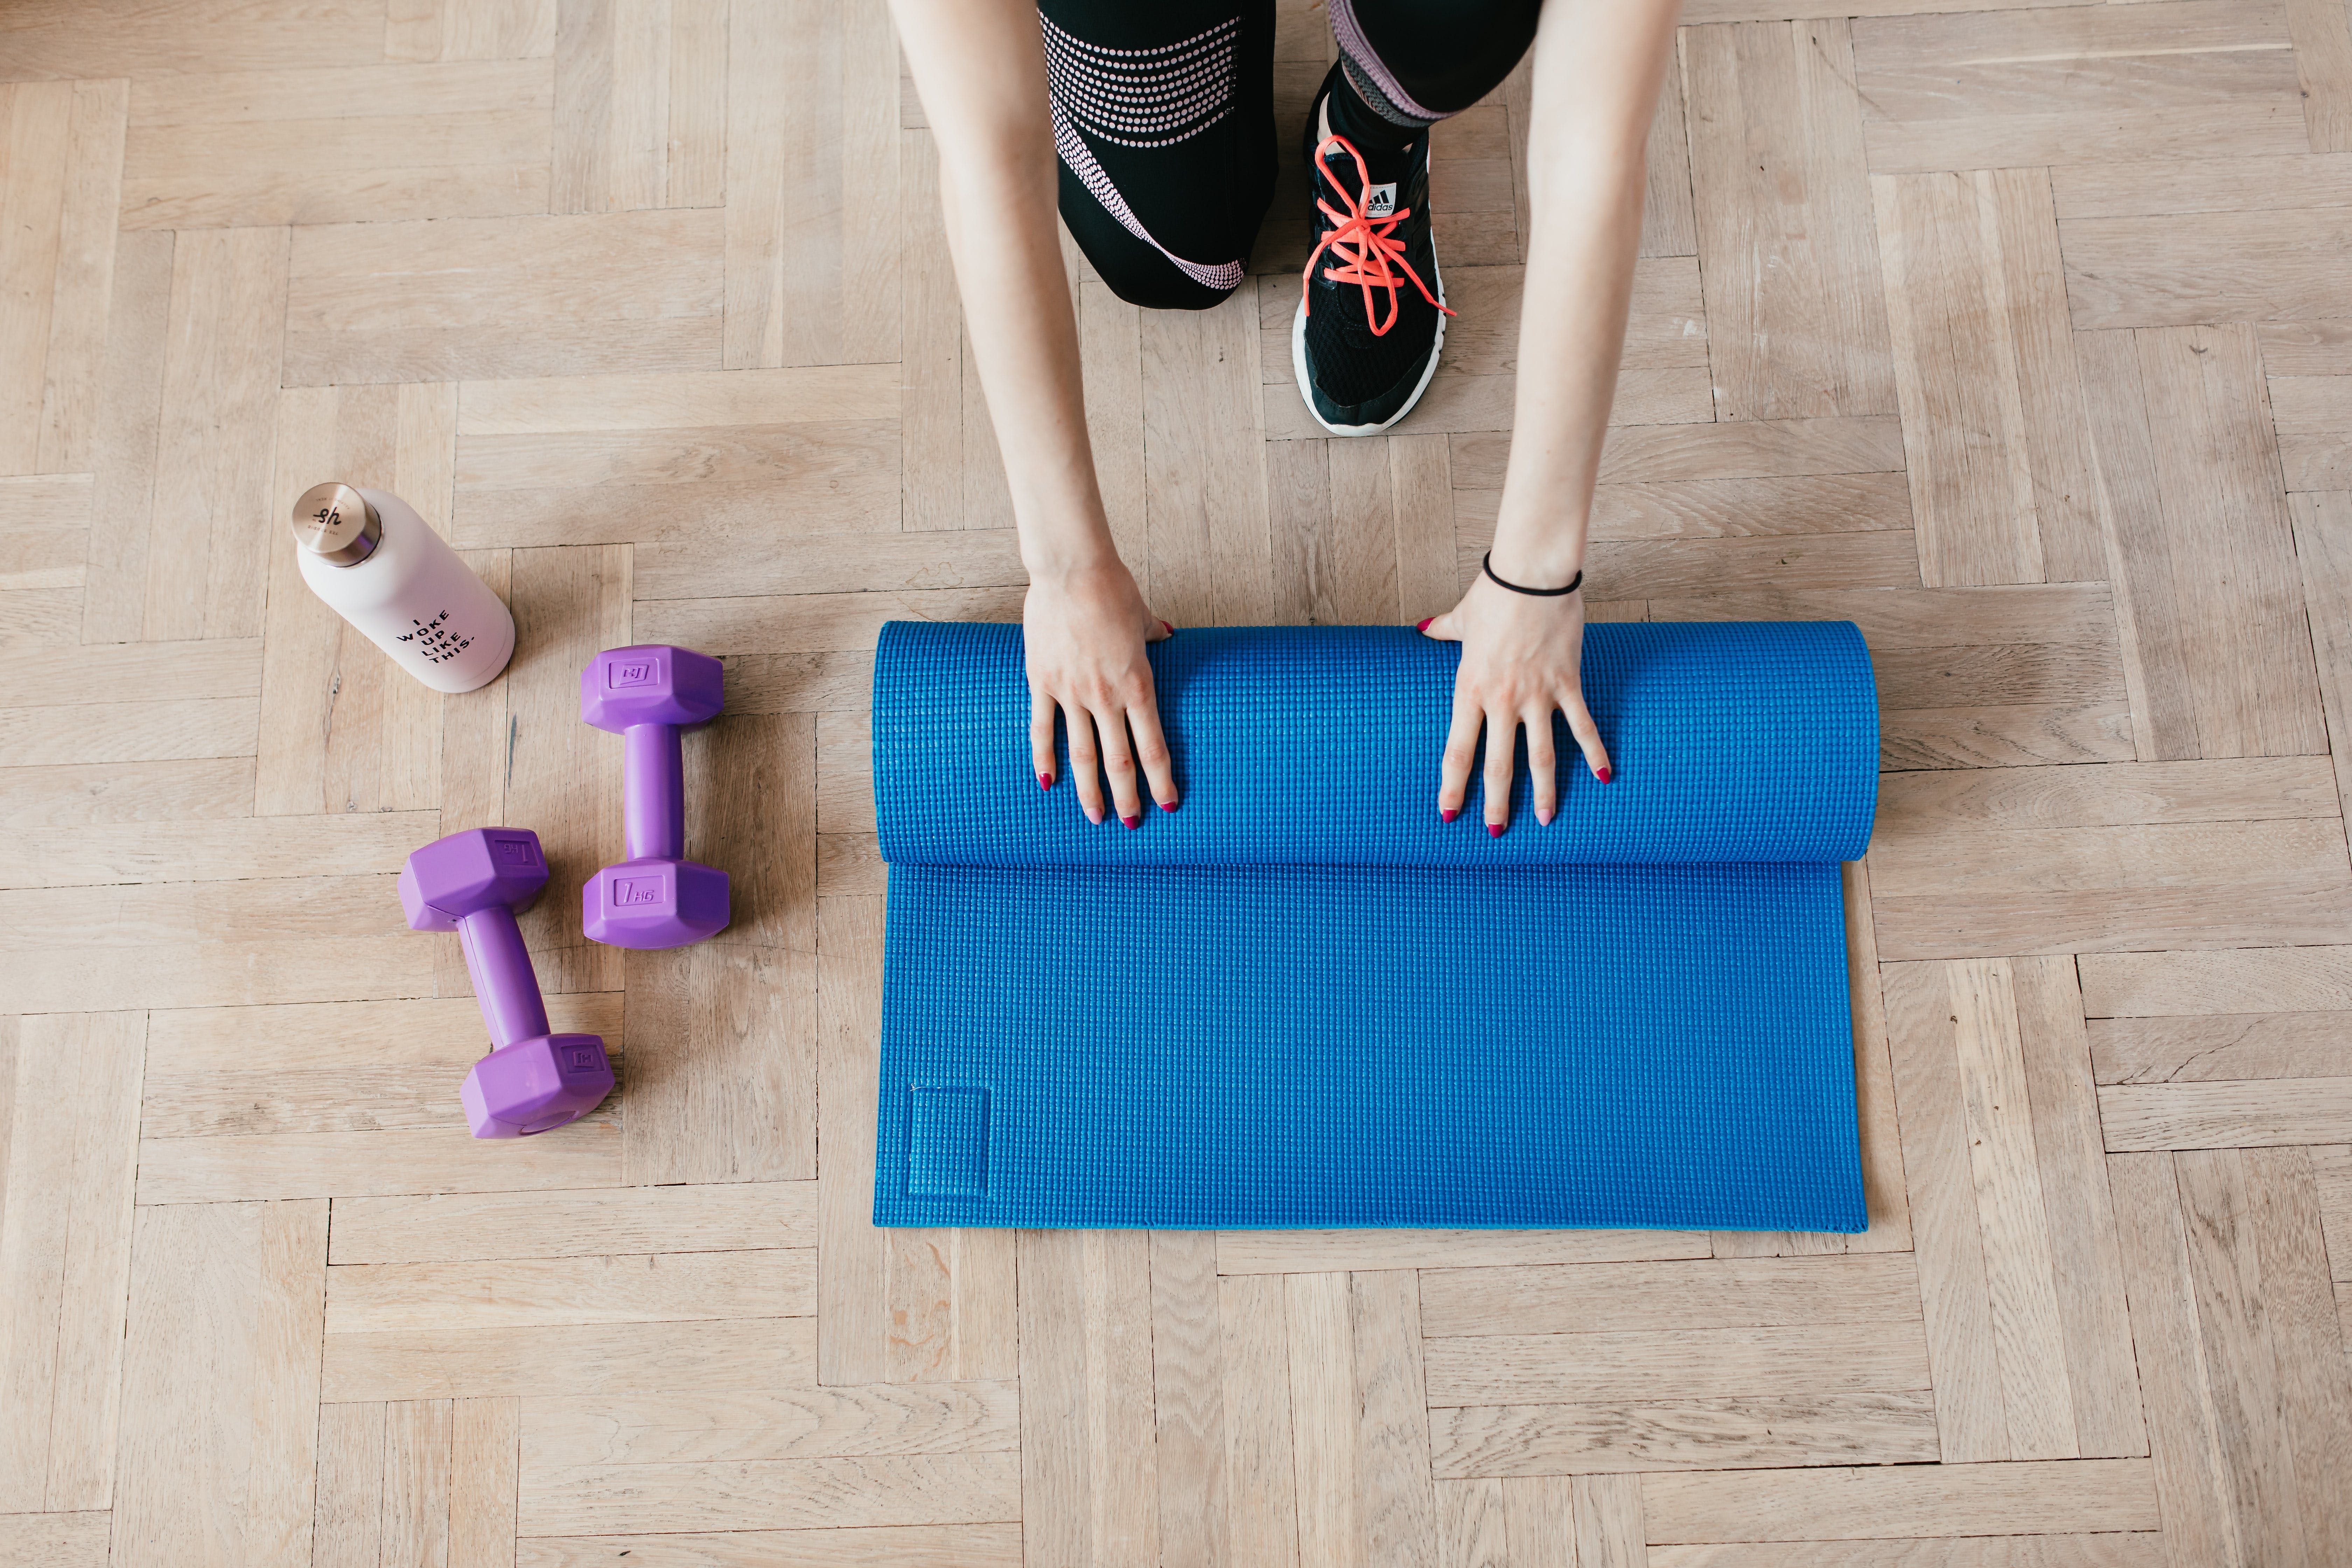 Упражнения для бедер могут хорошо подтянуть мышцы и сжечь жир.